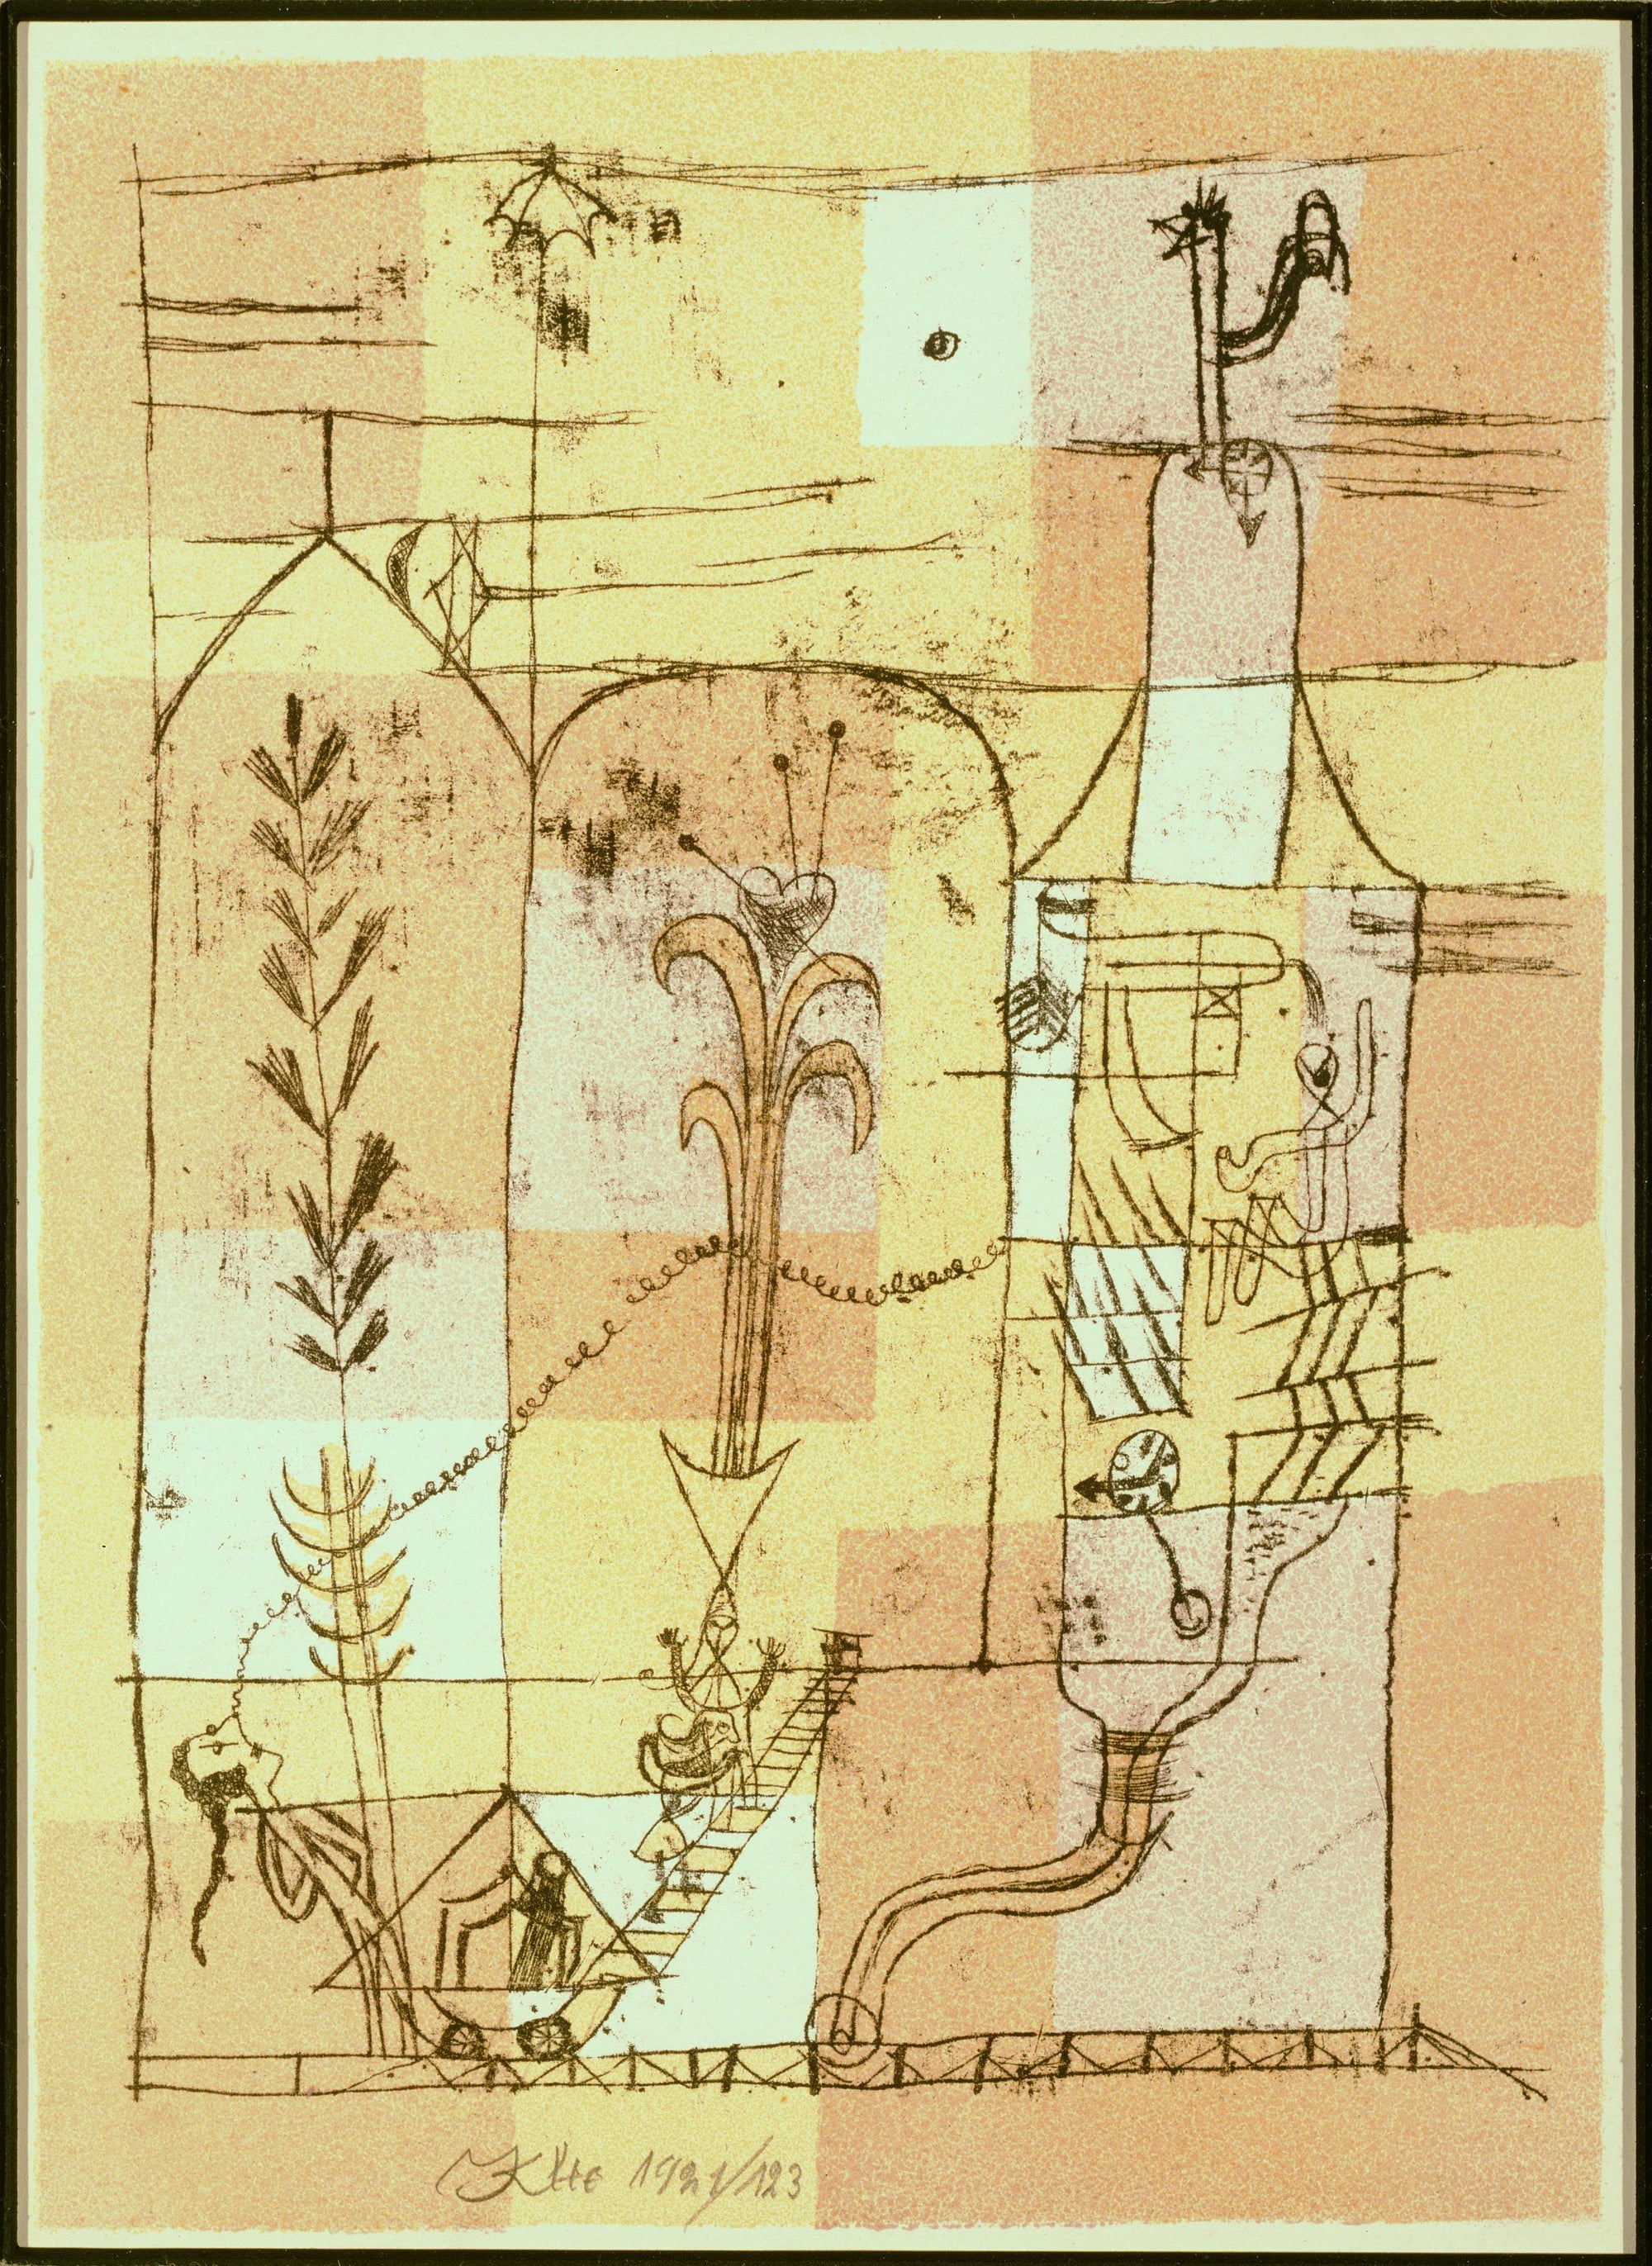 Tale à la Hoffmann - Paul Klee